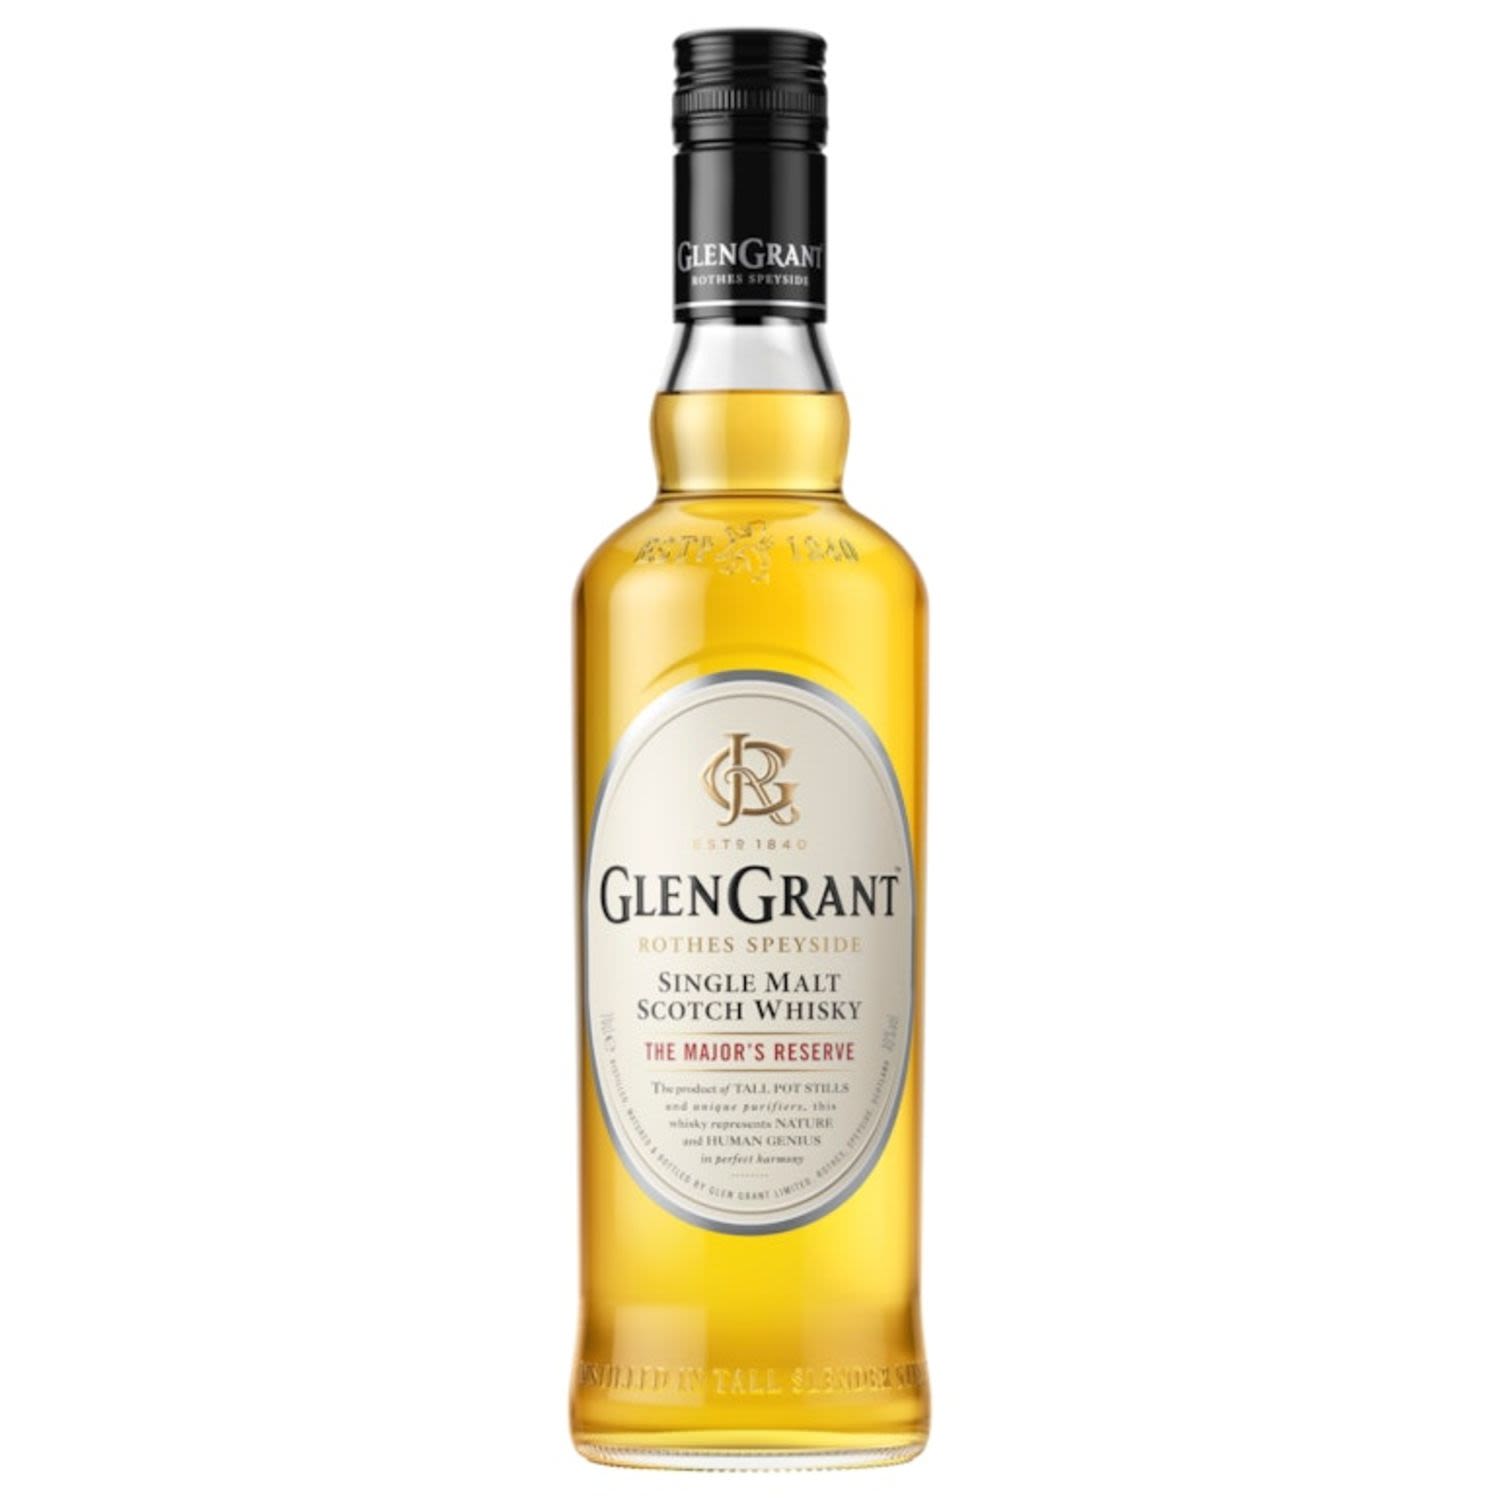 Glen Grant The Major's Reserve Single Malt Scotch Whisky 700mL Bottle